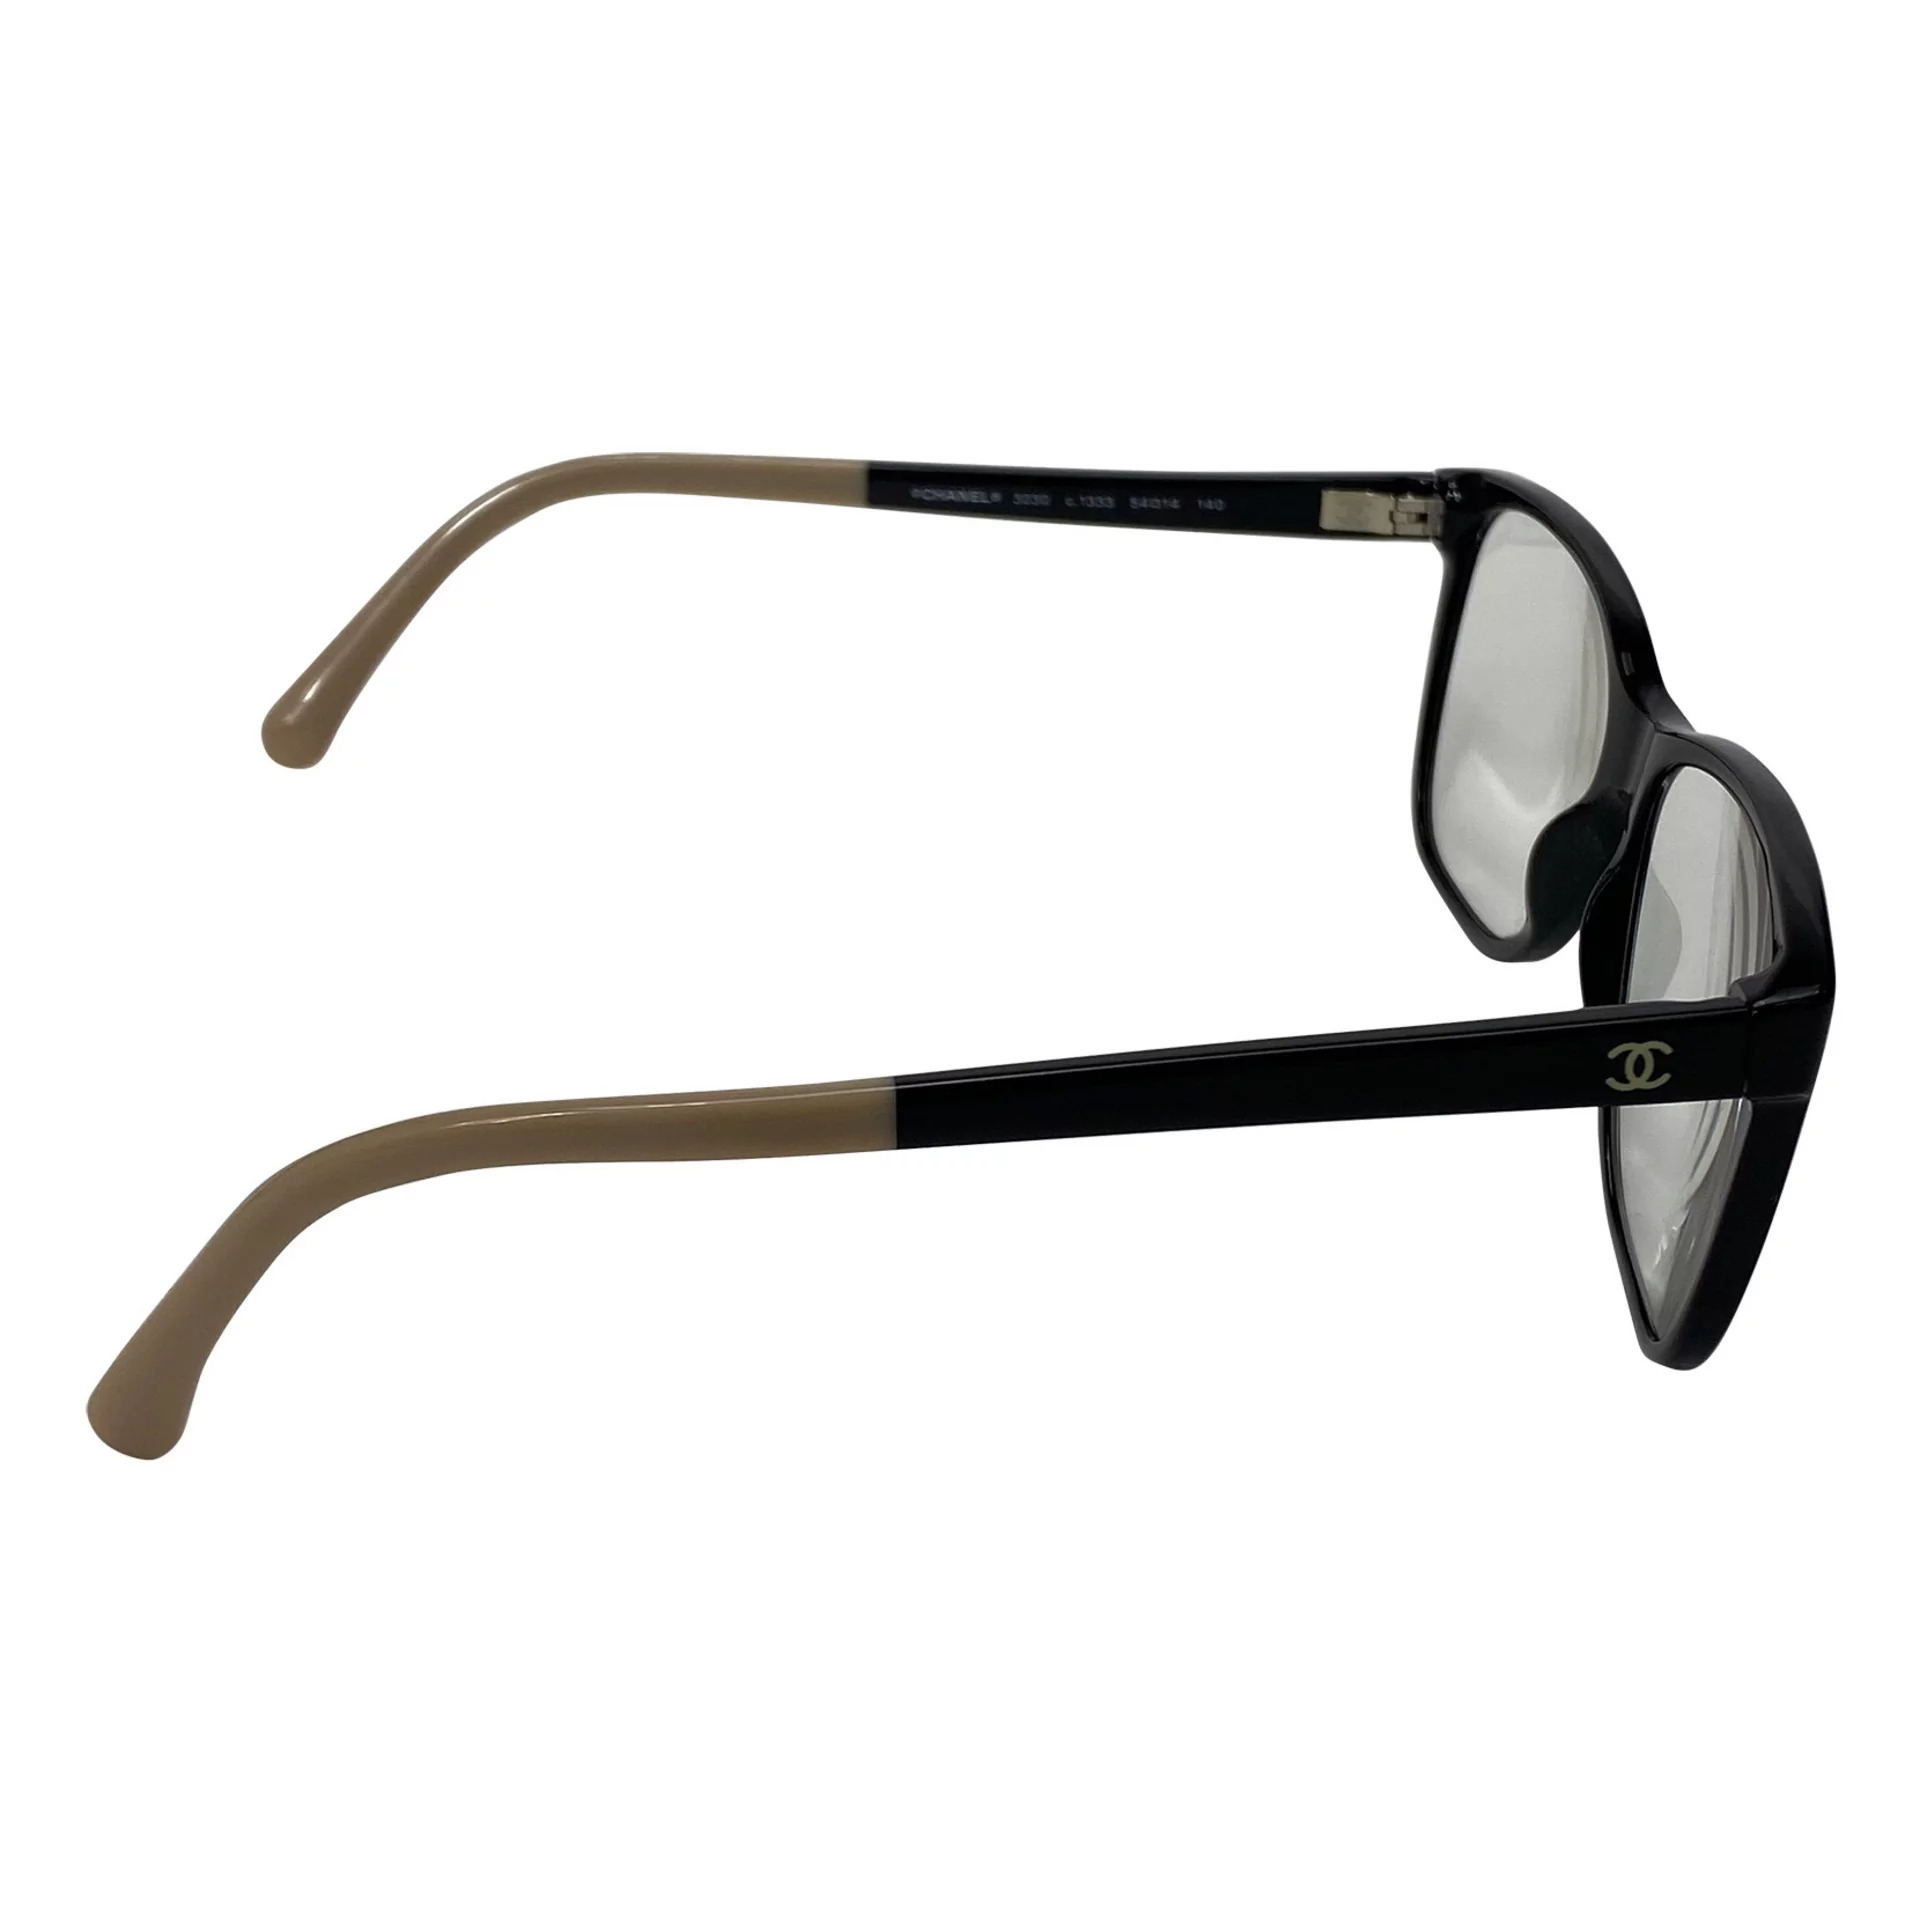 Óculos Chanel - CH 3230